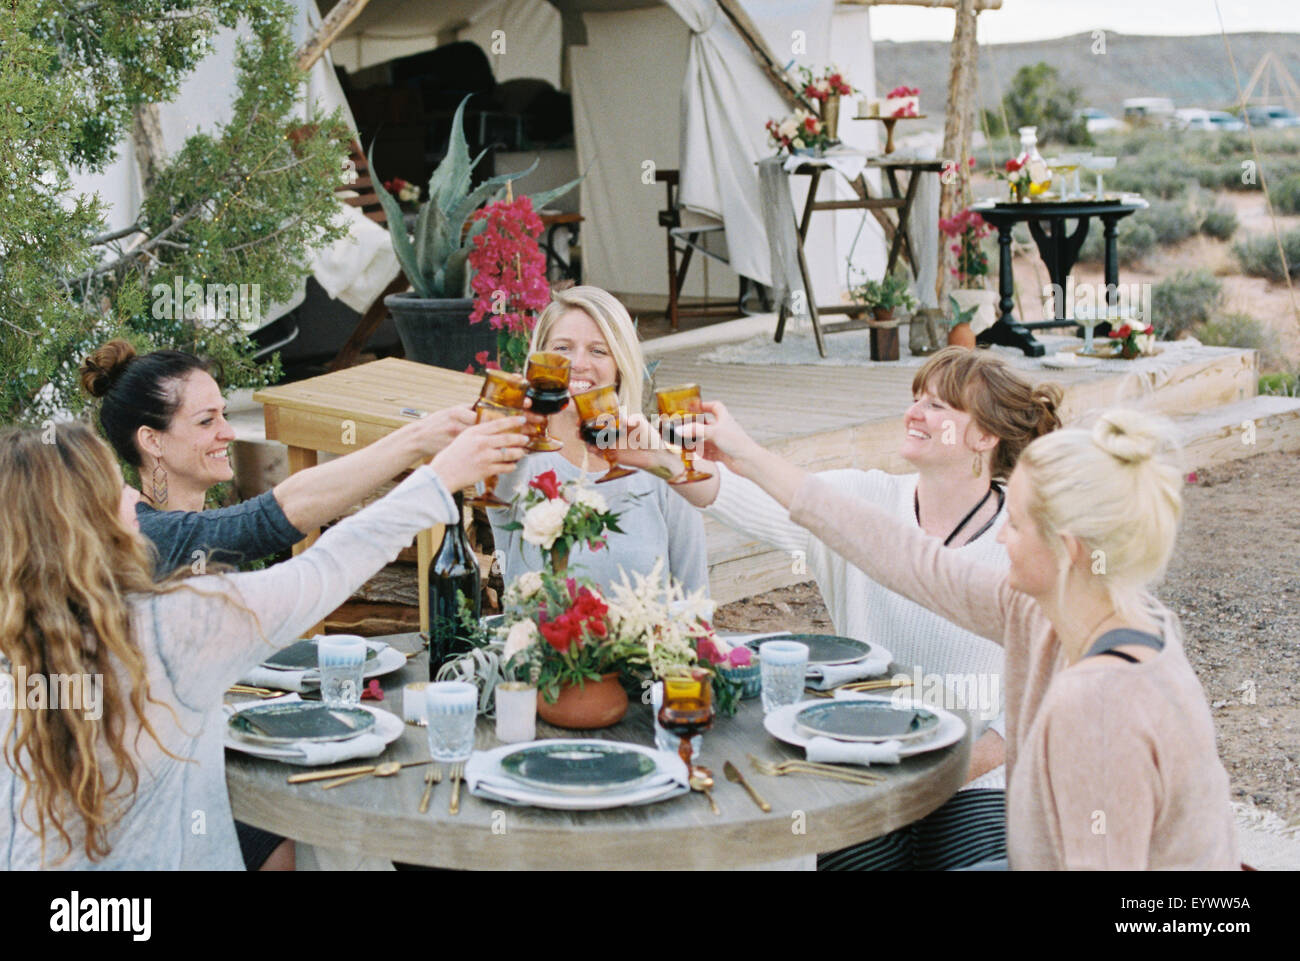 Eine Gruppe von Frauen genießen eine Mahlzeit im Freien durch ein großes Zelt in einer Wüstenlandschaft, einen Toast durch klirrende Gläser. Stockfoto